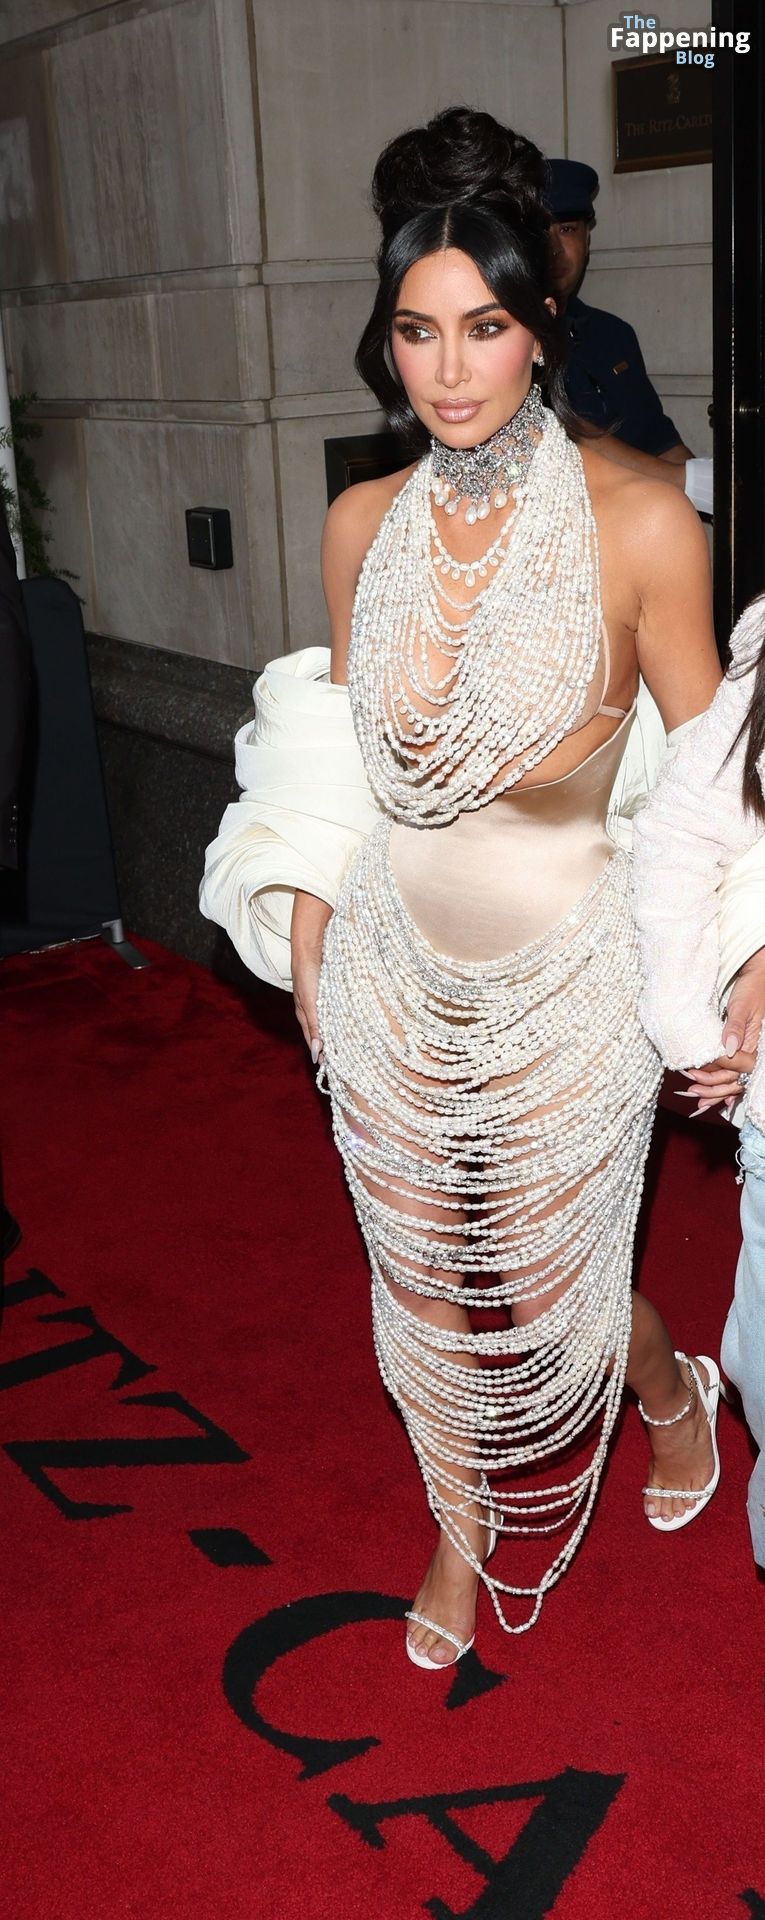 Kim-Kardashian-Sexy-The-Fappening-Blog-137.jpg